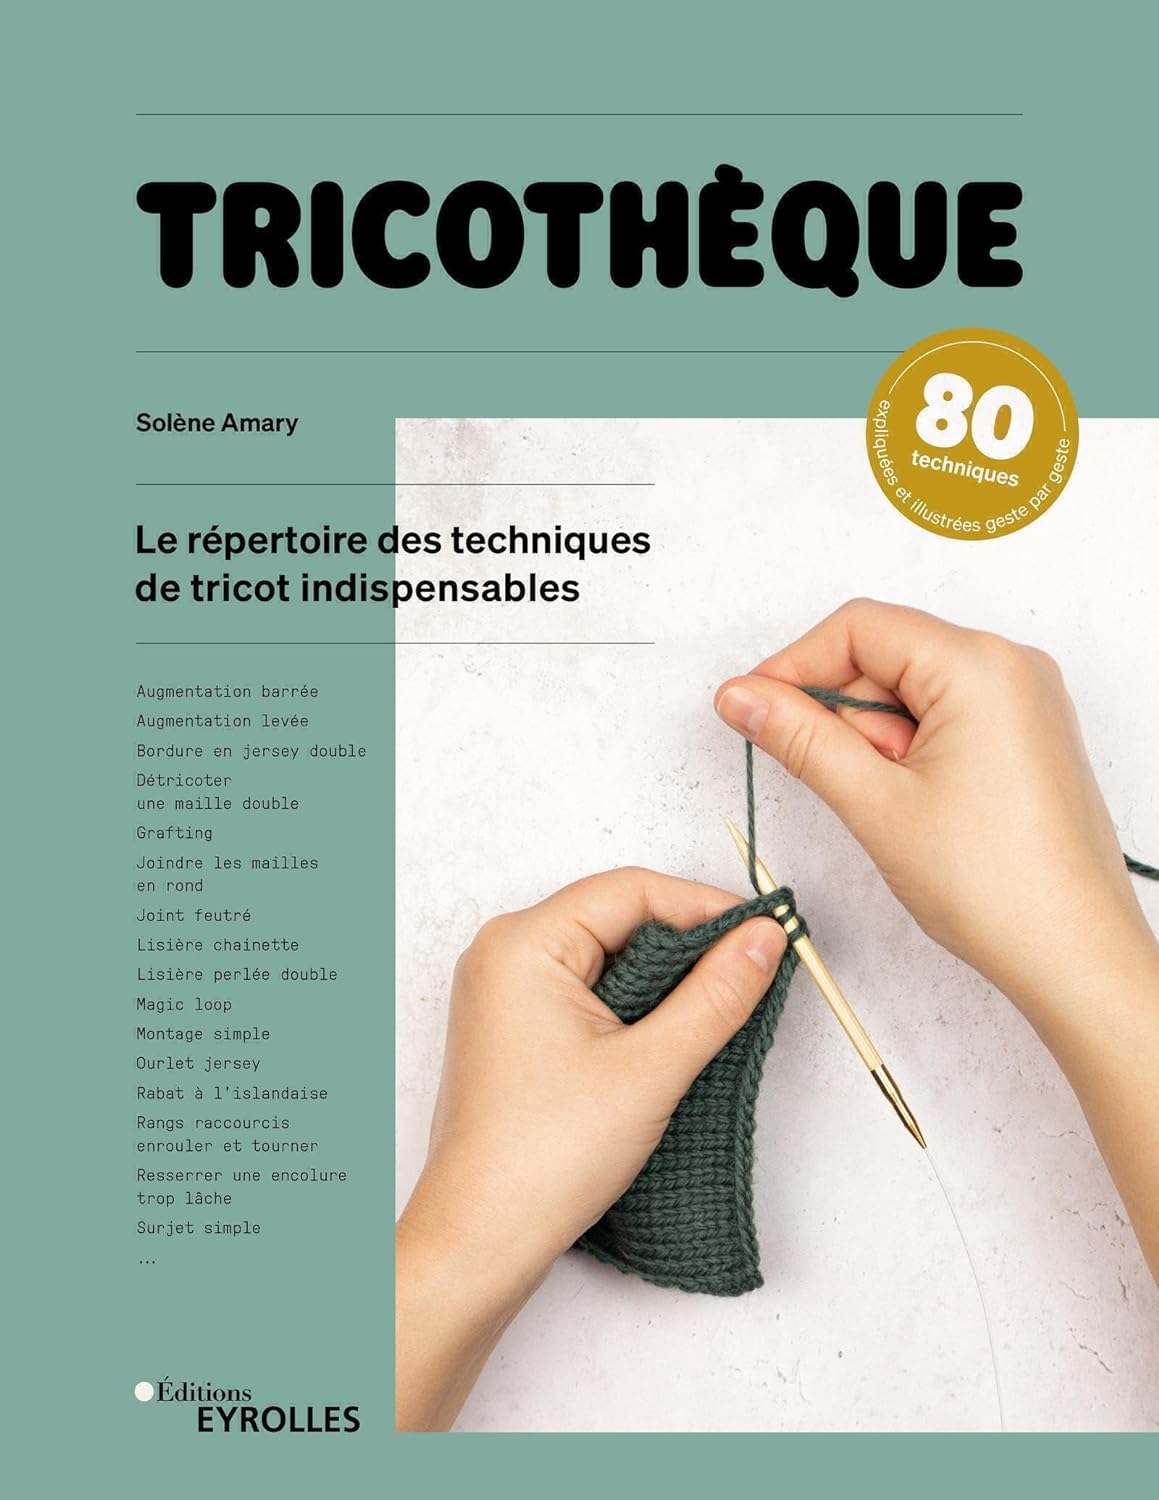 Tricothèque